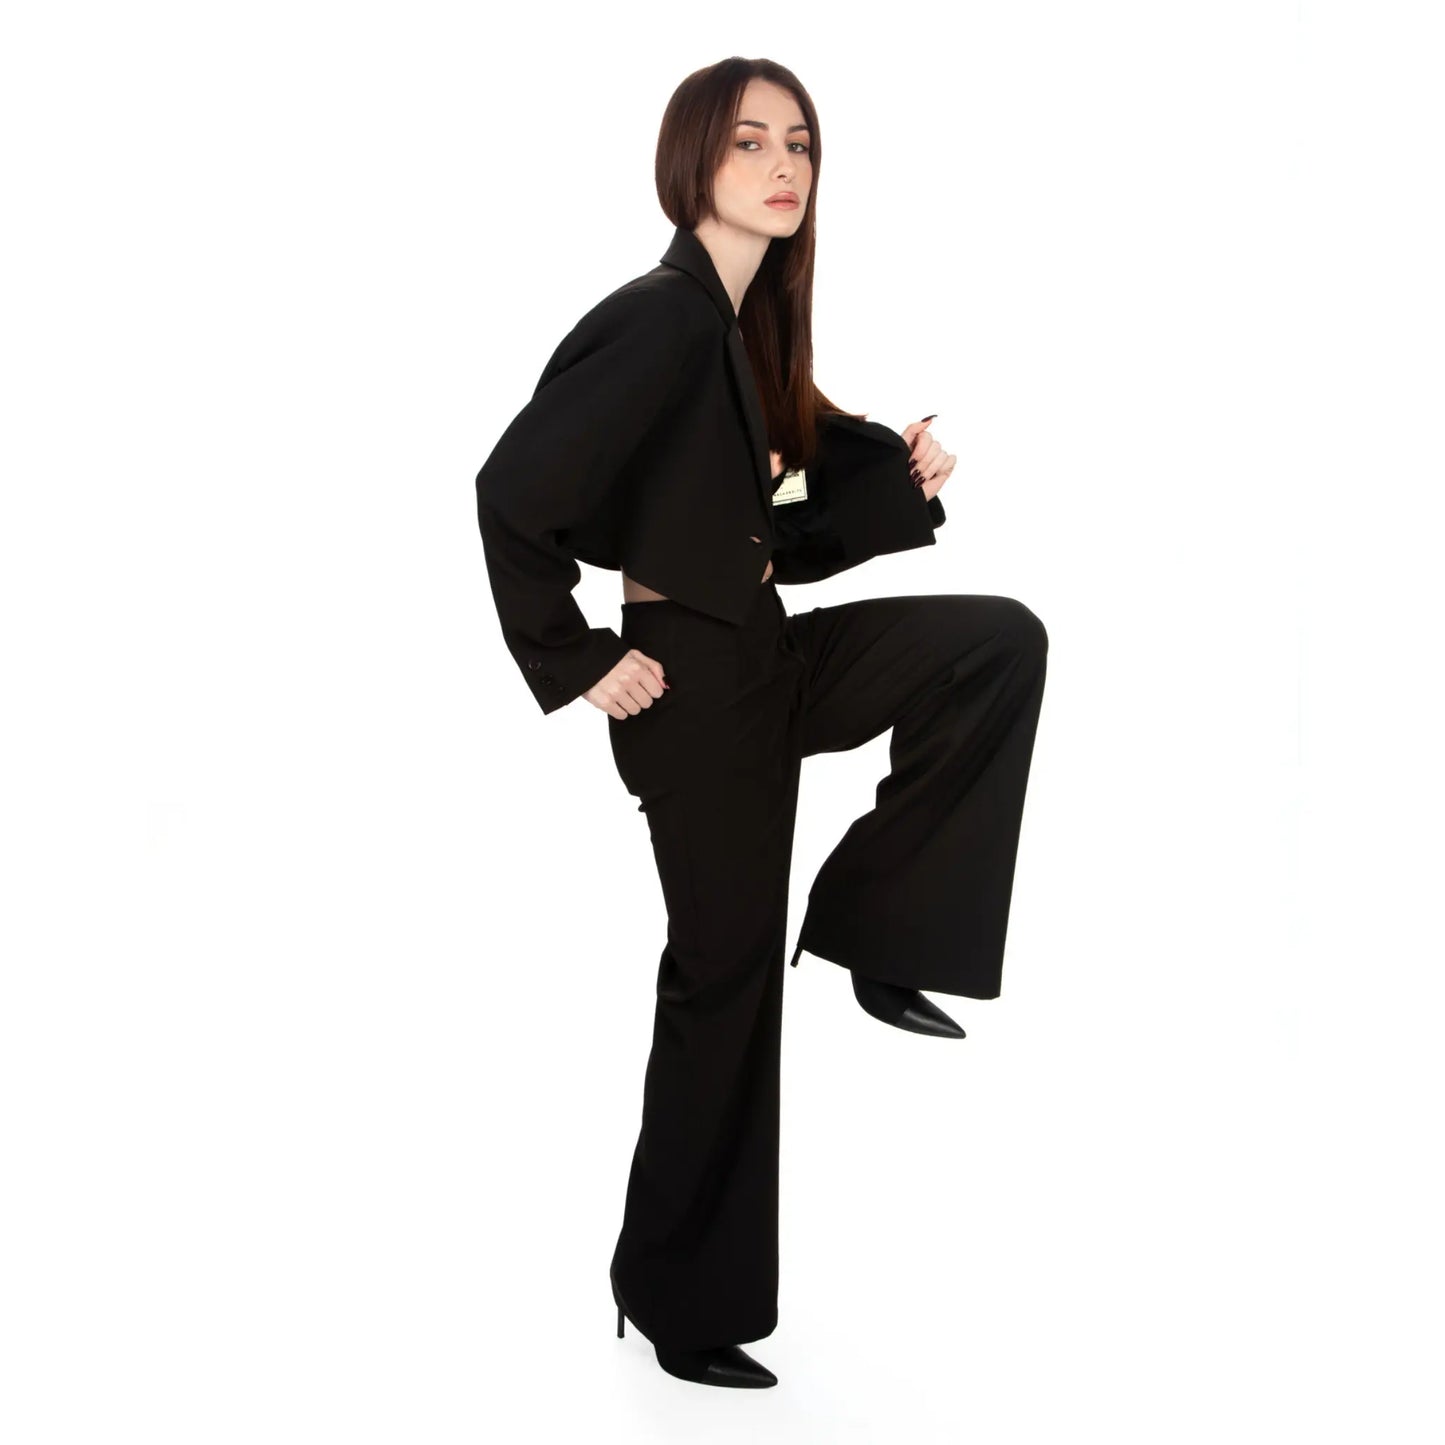 Oversized Cropped Blazer & Wide-Leg Trousers Set worn by brunette woman posing side view